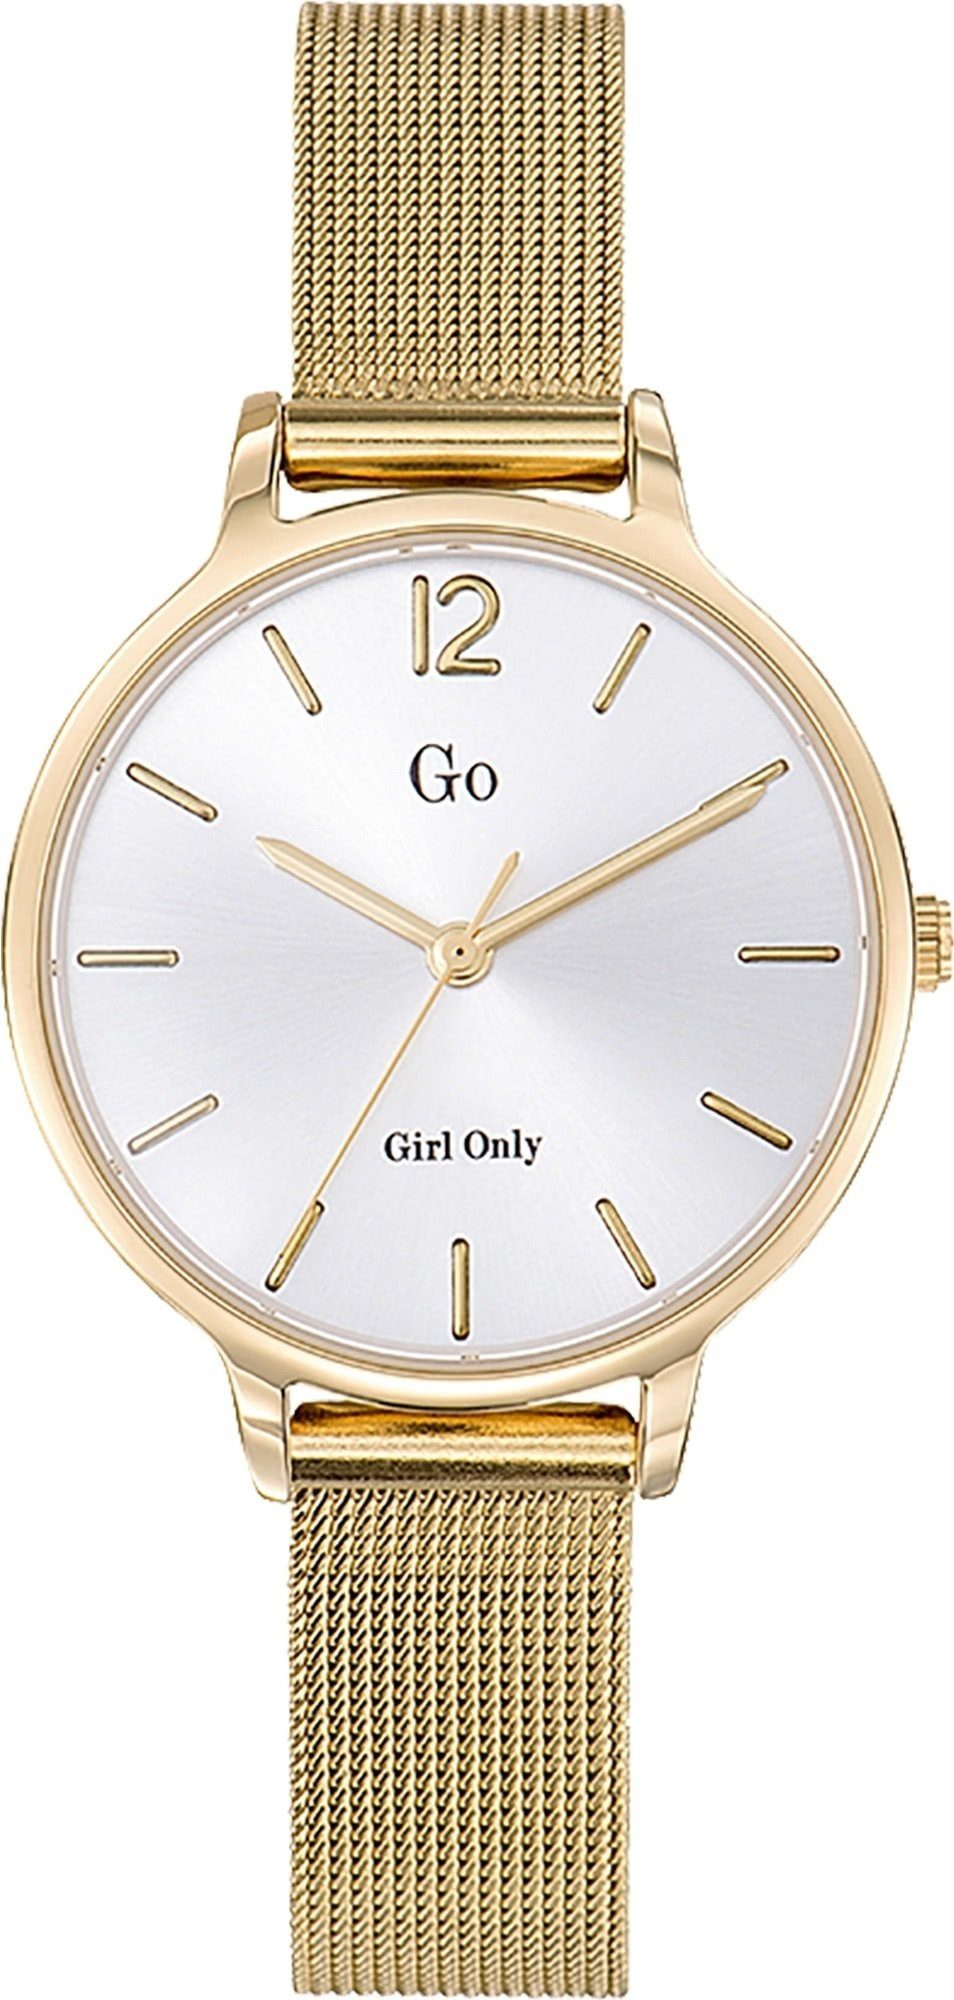 Girl Only Quarzuhr Girl Only Damen Armbanduhr gold, Damenuhr rund, mittel (ca. 32mm), Edelstahlarmband, Luxus-Style | Quarzuhren